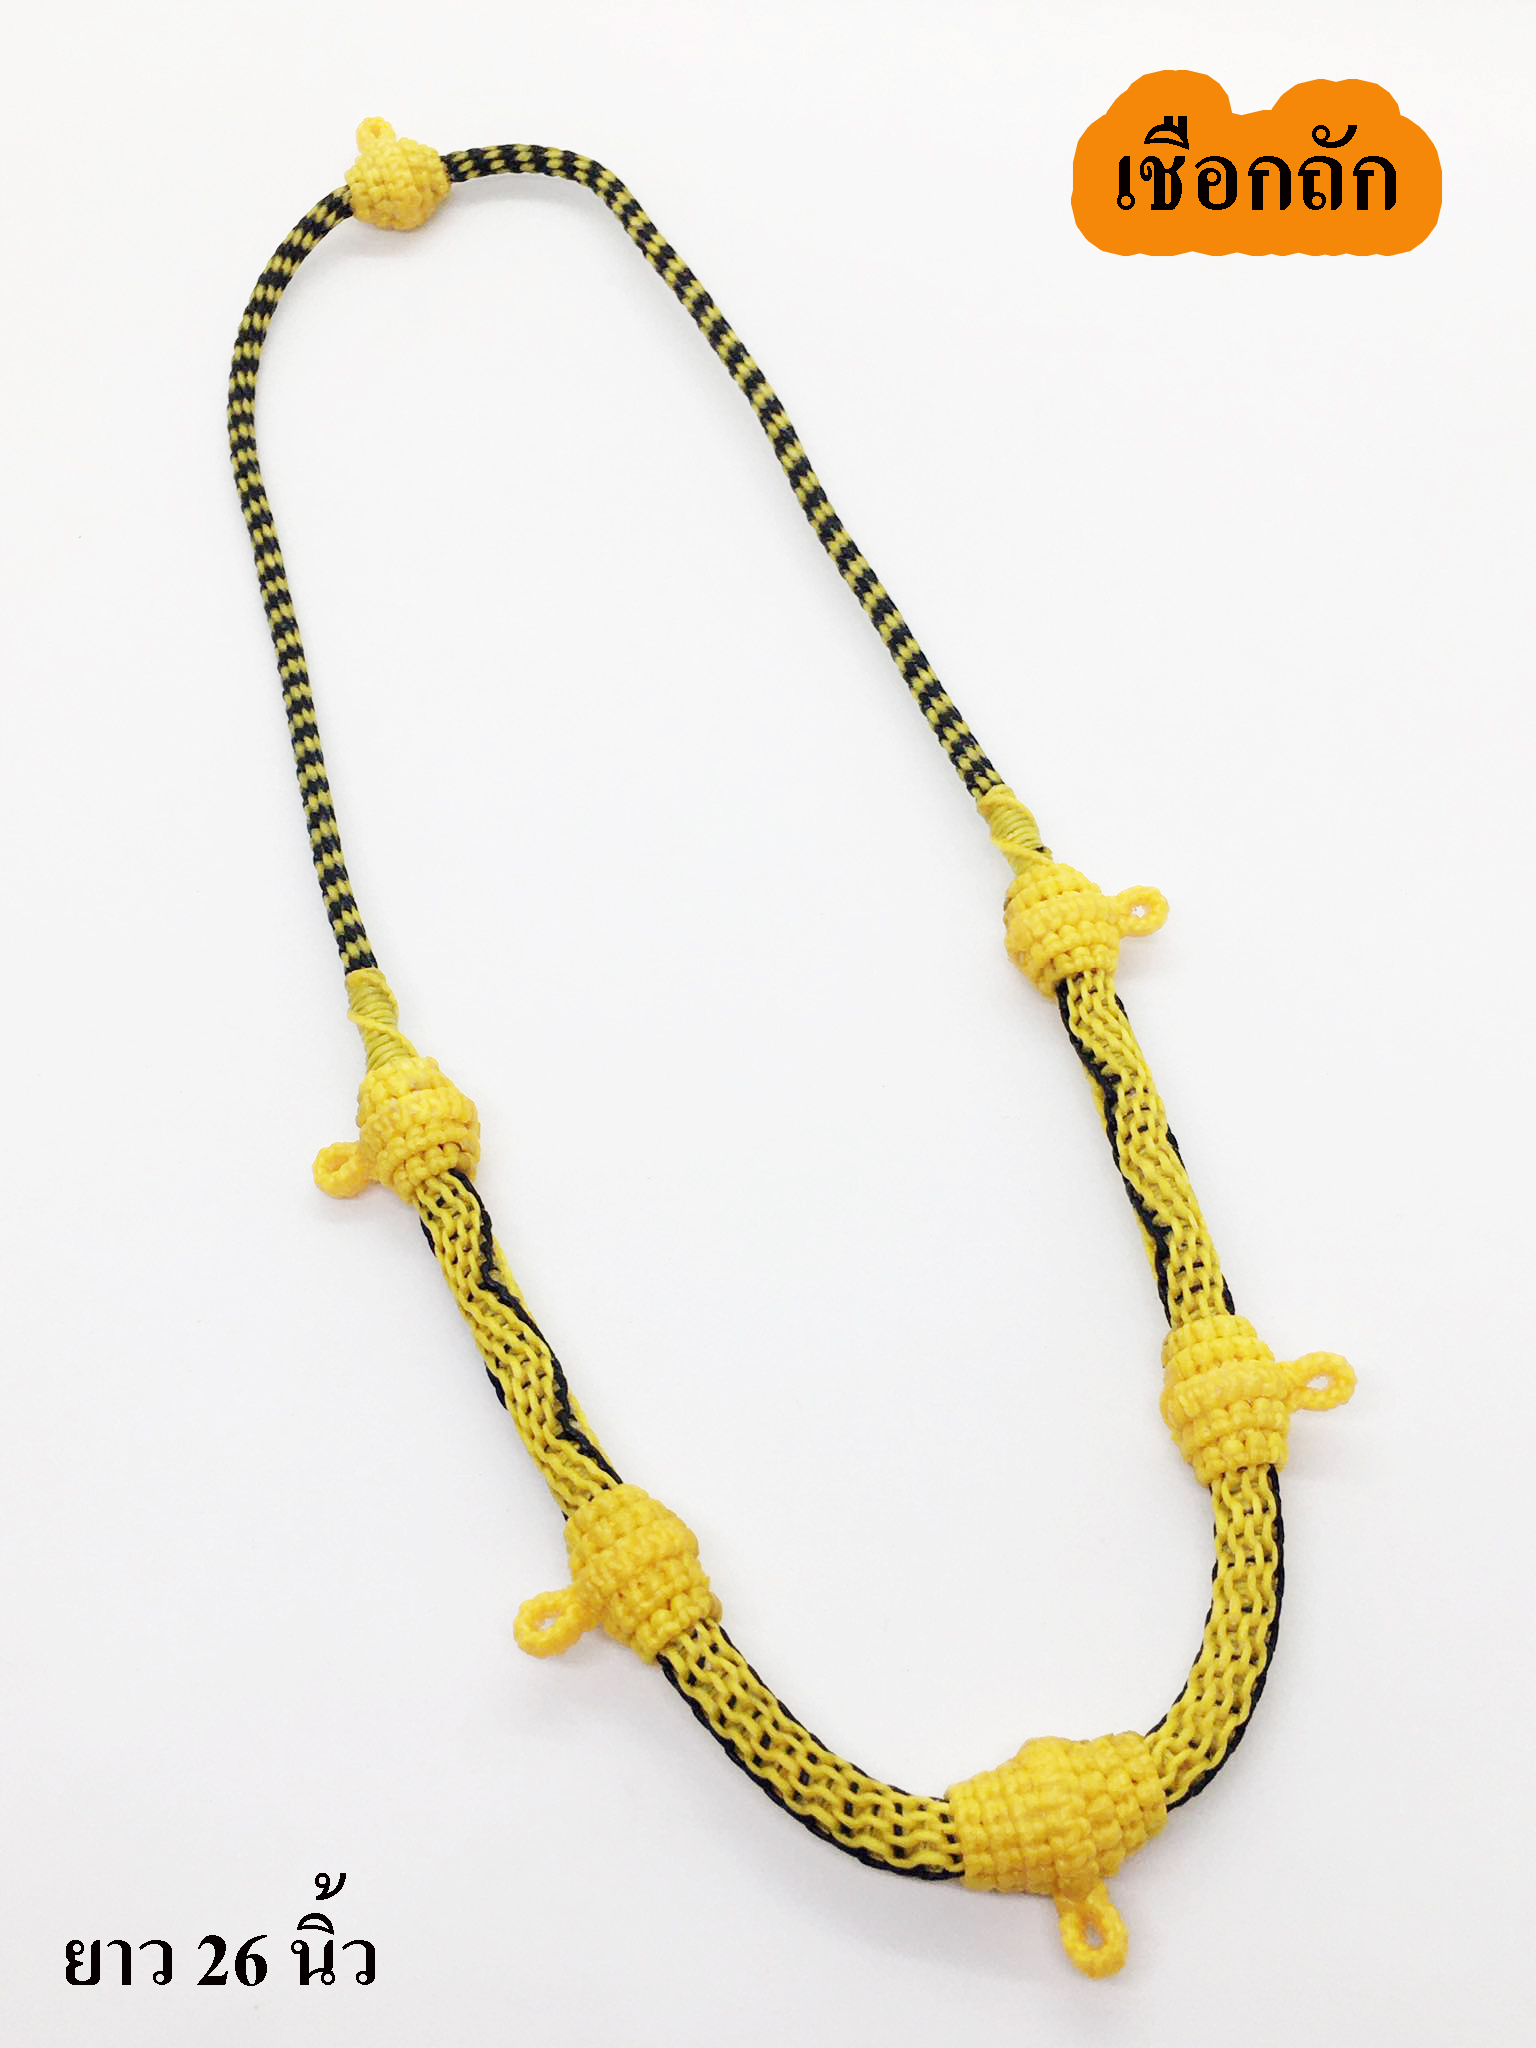 สร้อยคอ เชือกเทียนถักมือ เชือกห้อยพระ สี ดำ เหลือง 5 ห่วง ห้อยหลัง ยาว 26 นิ้วNecklace, hand-woven wax rope, black-yellow monk rope, 5 rings hanging back, 26 inches long./